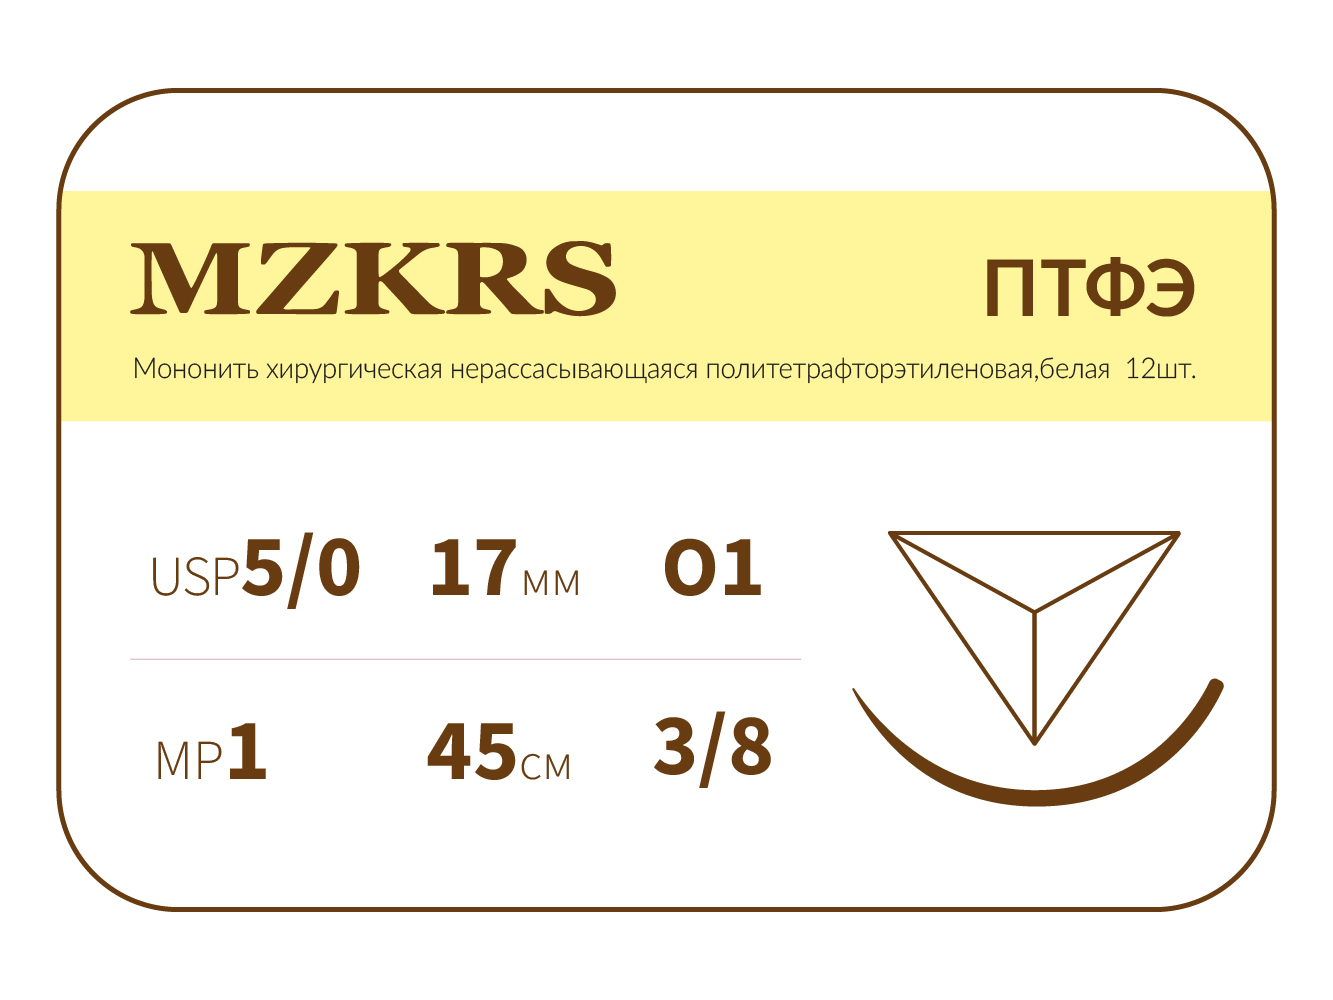 1738О1-Premium 5/0 (1) 45 ПТФЭ хирургическая нить политетрафторэтиленовая, MZKRS (Россия)